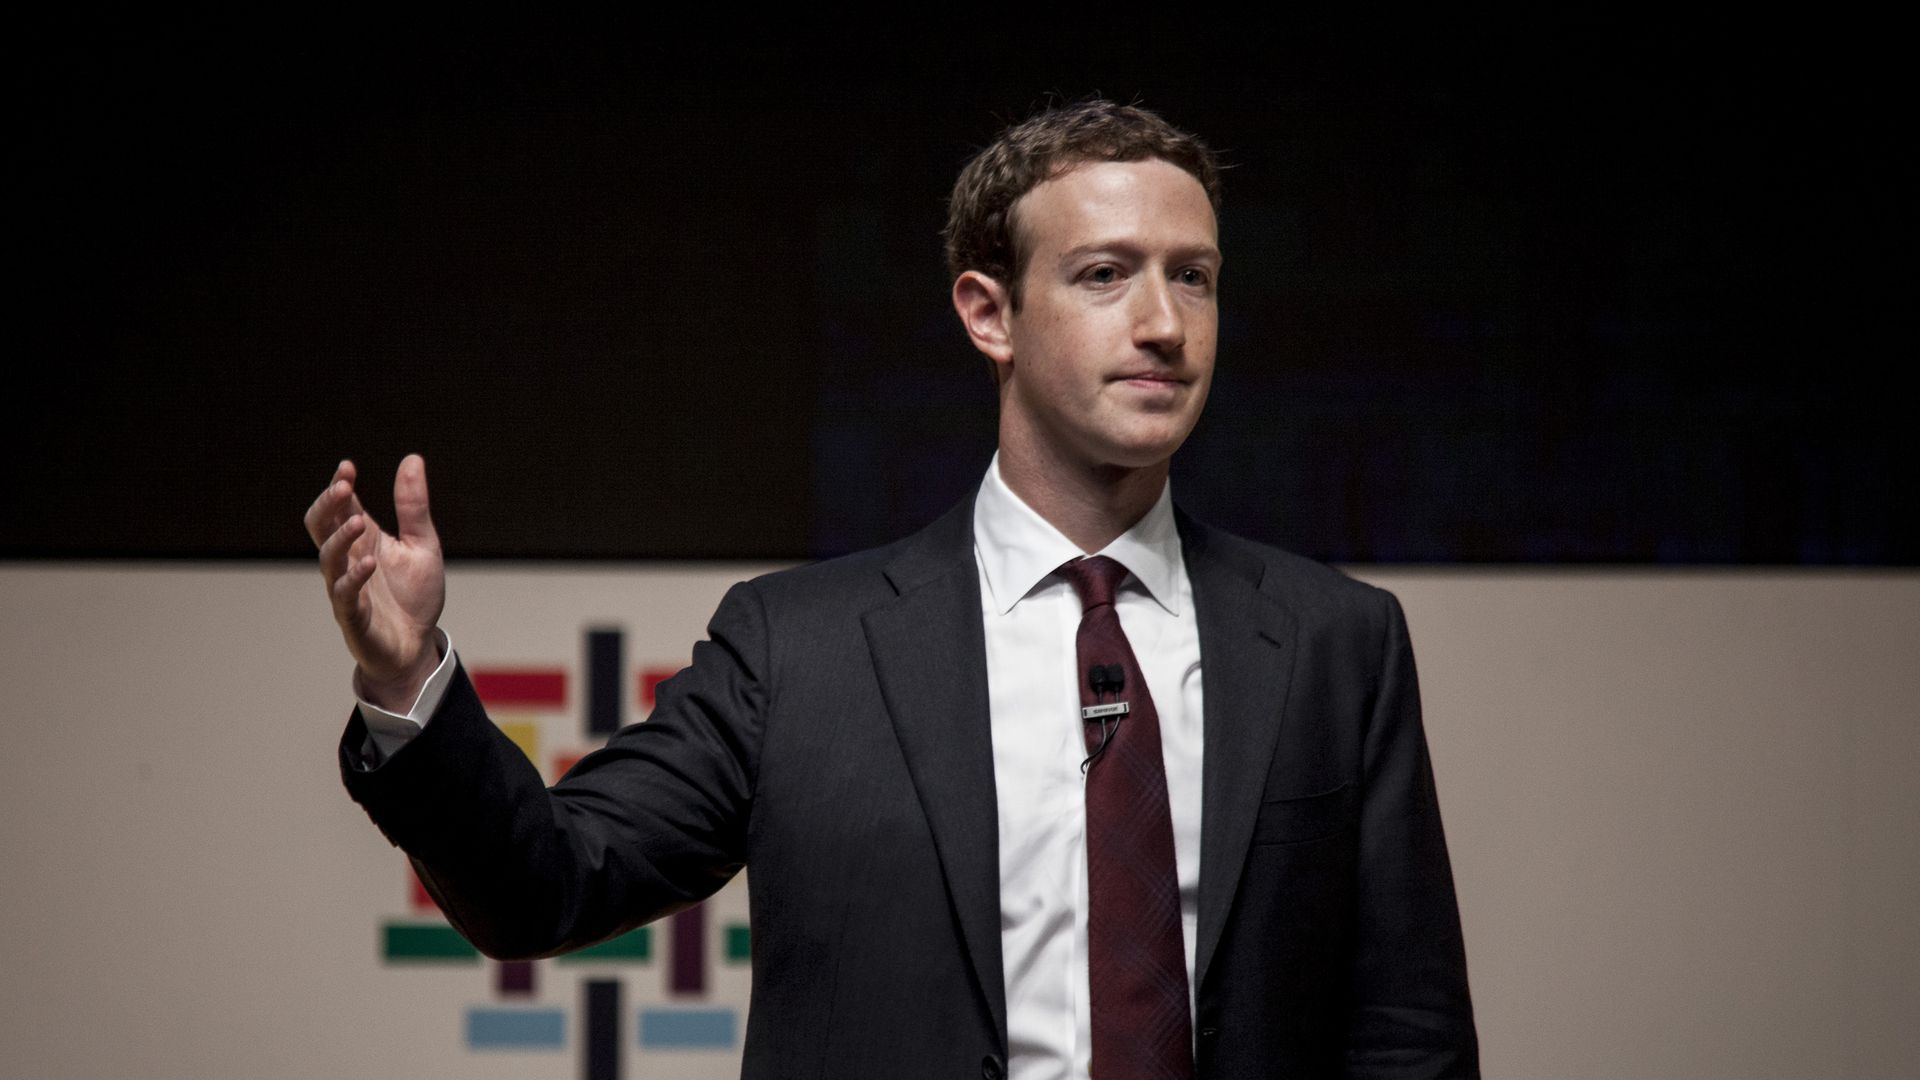 Facebook CEO Mark Zuckerberg in a suit